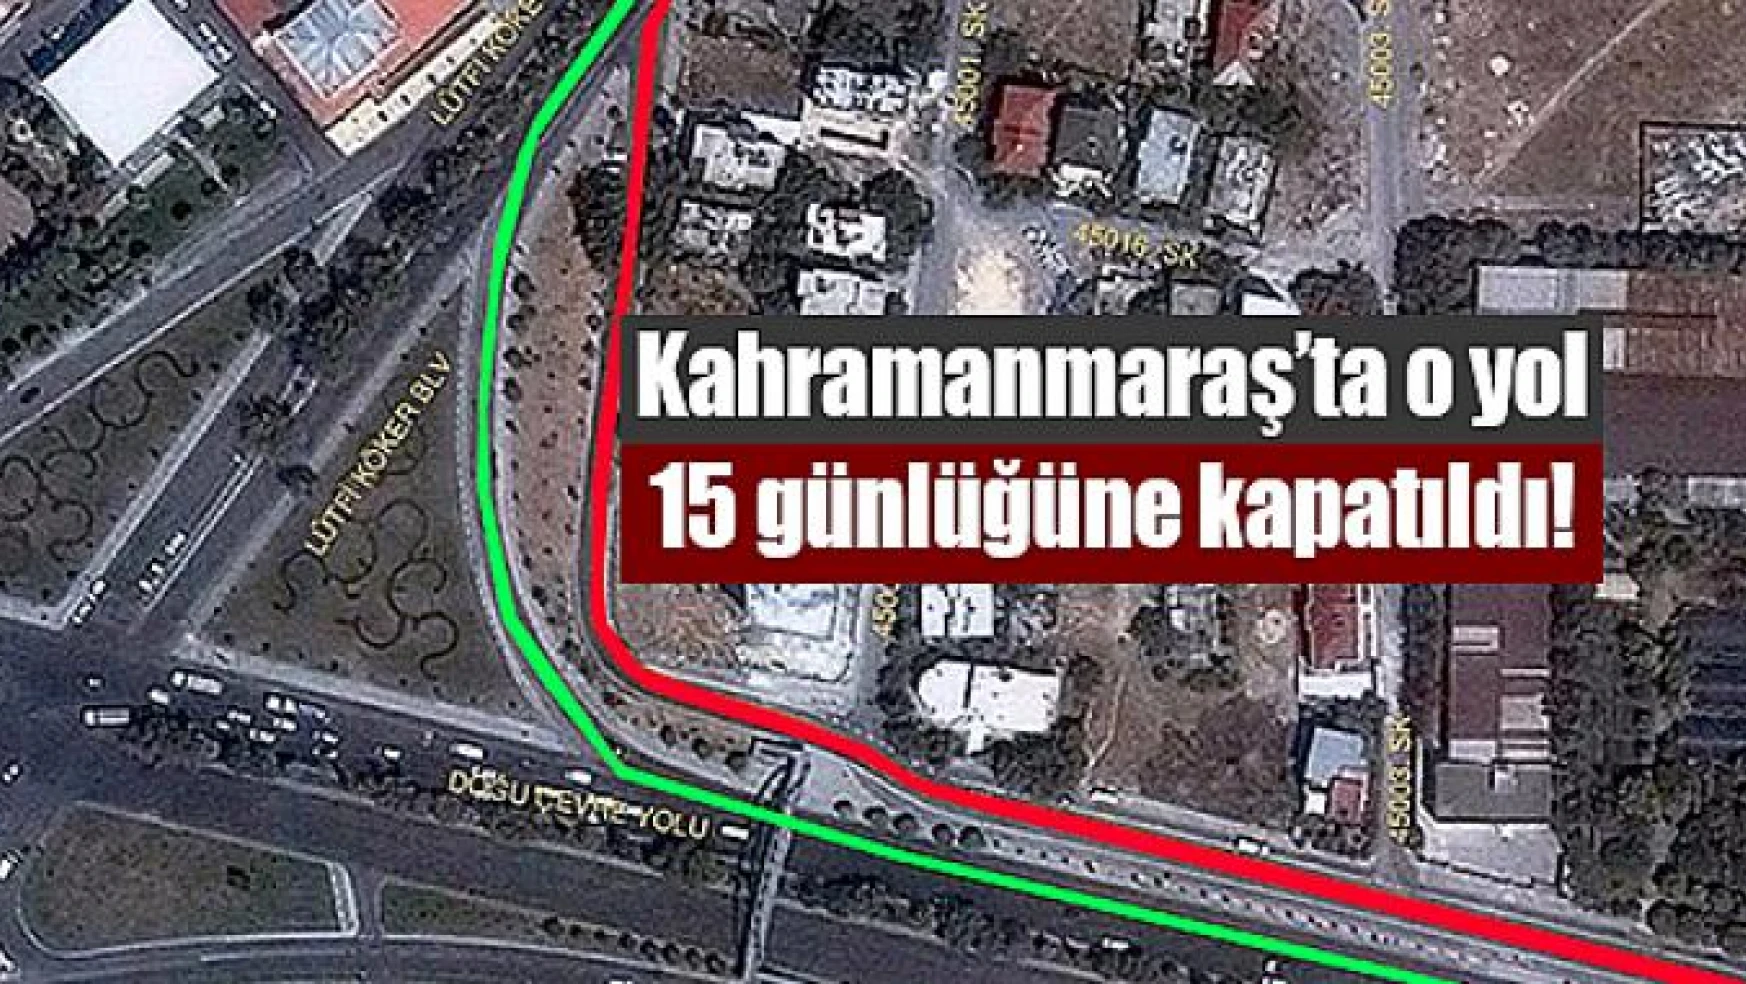 Kahramanmaraş'ta o yol 15 günlüğüne kapatıldı!